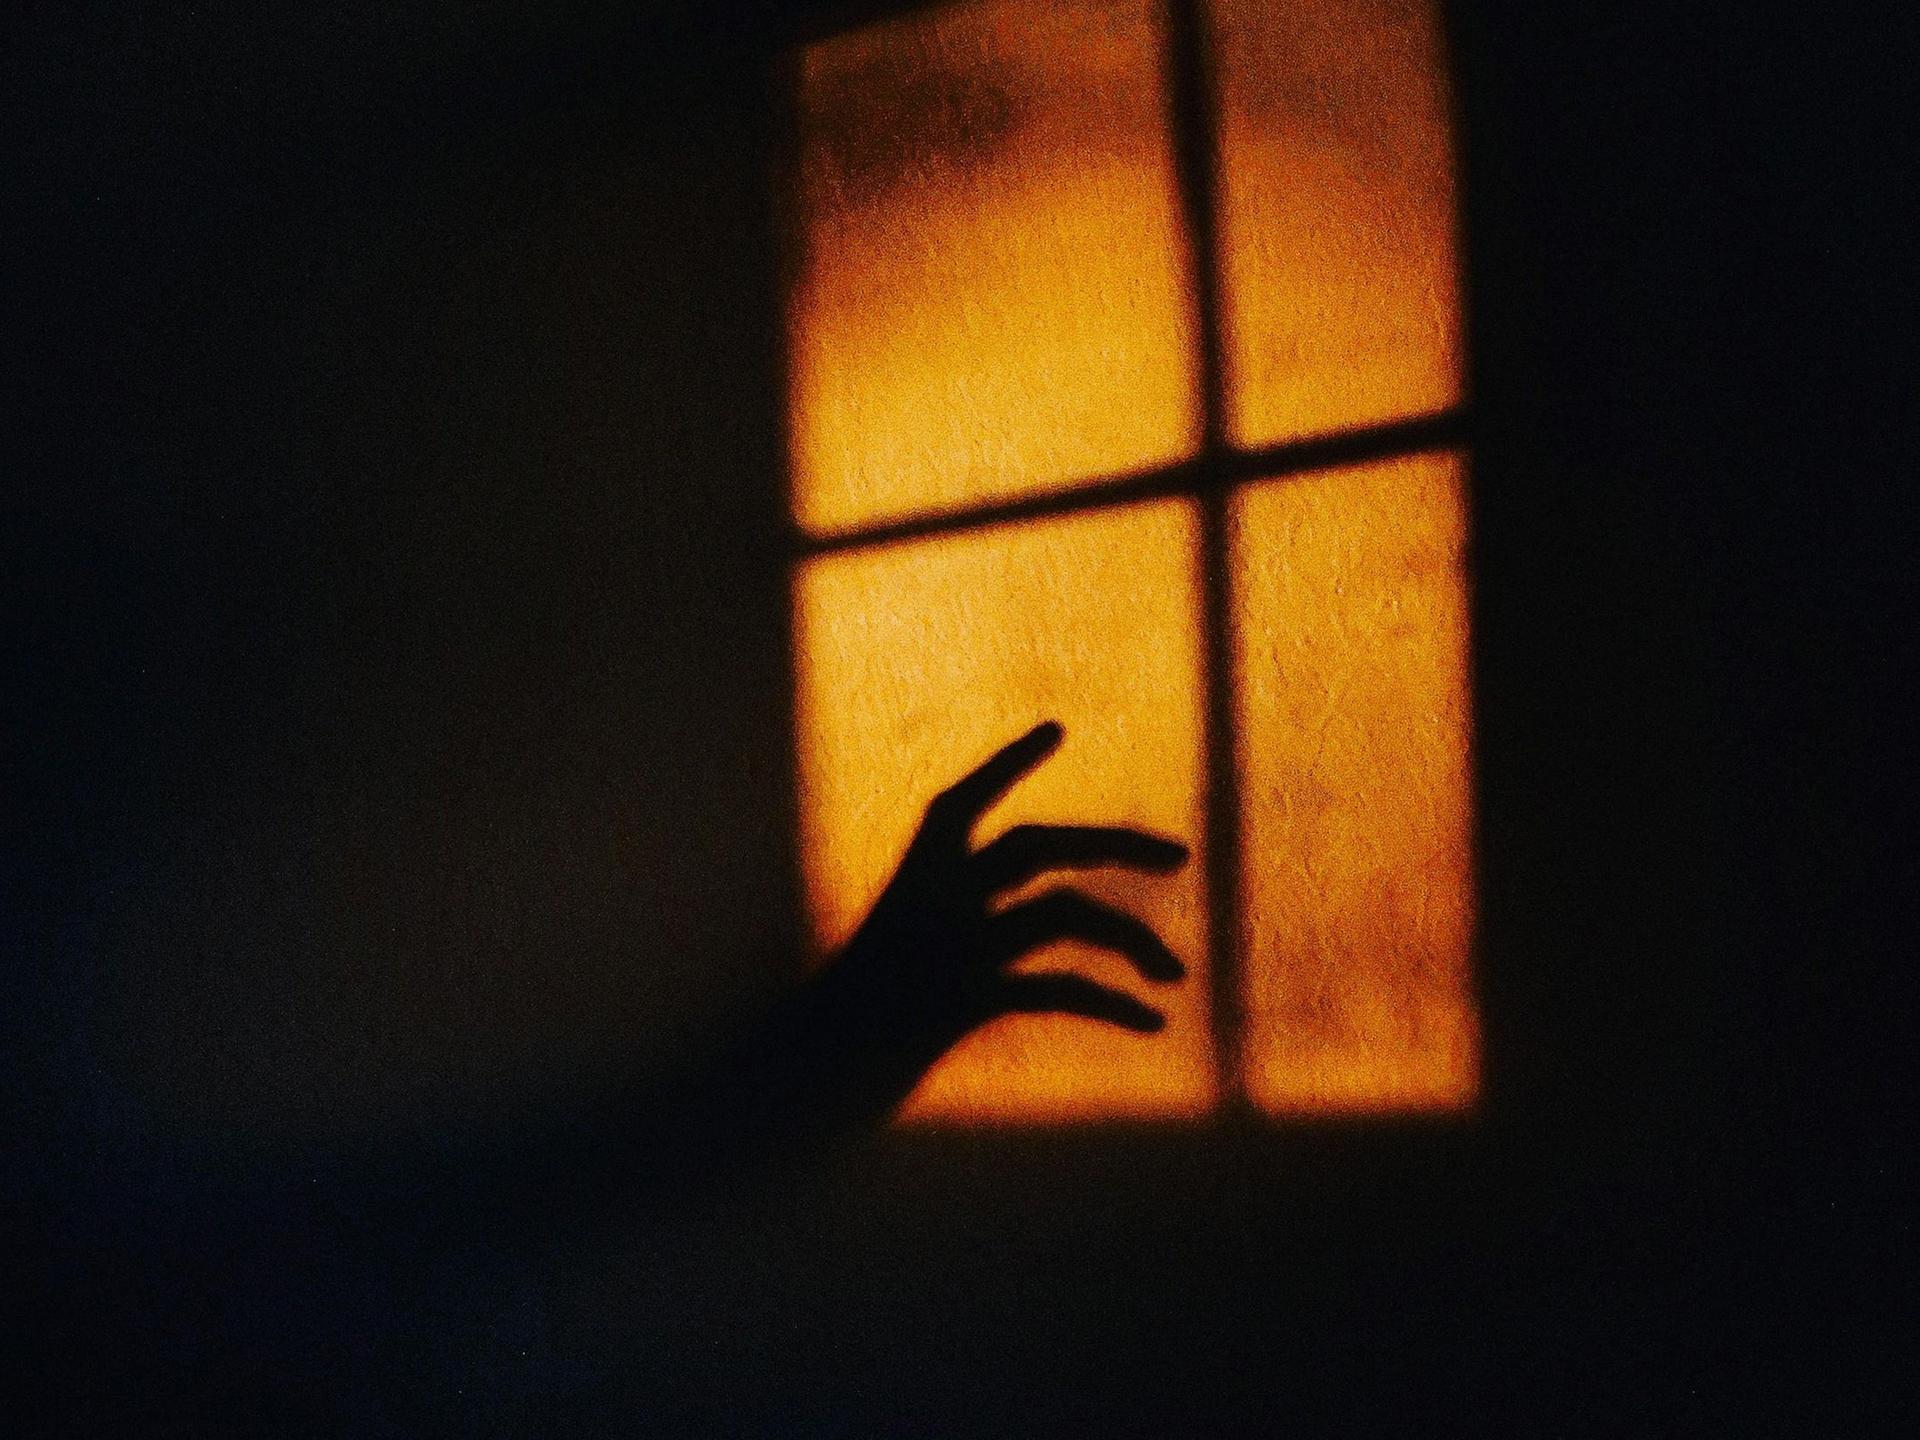 Auf einer Wand erscheint das gelbe Licht eines Fensters, in das der Schatten einer Hand hineinragt.